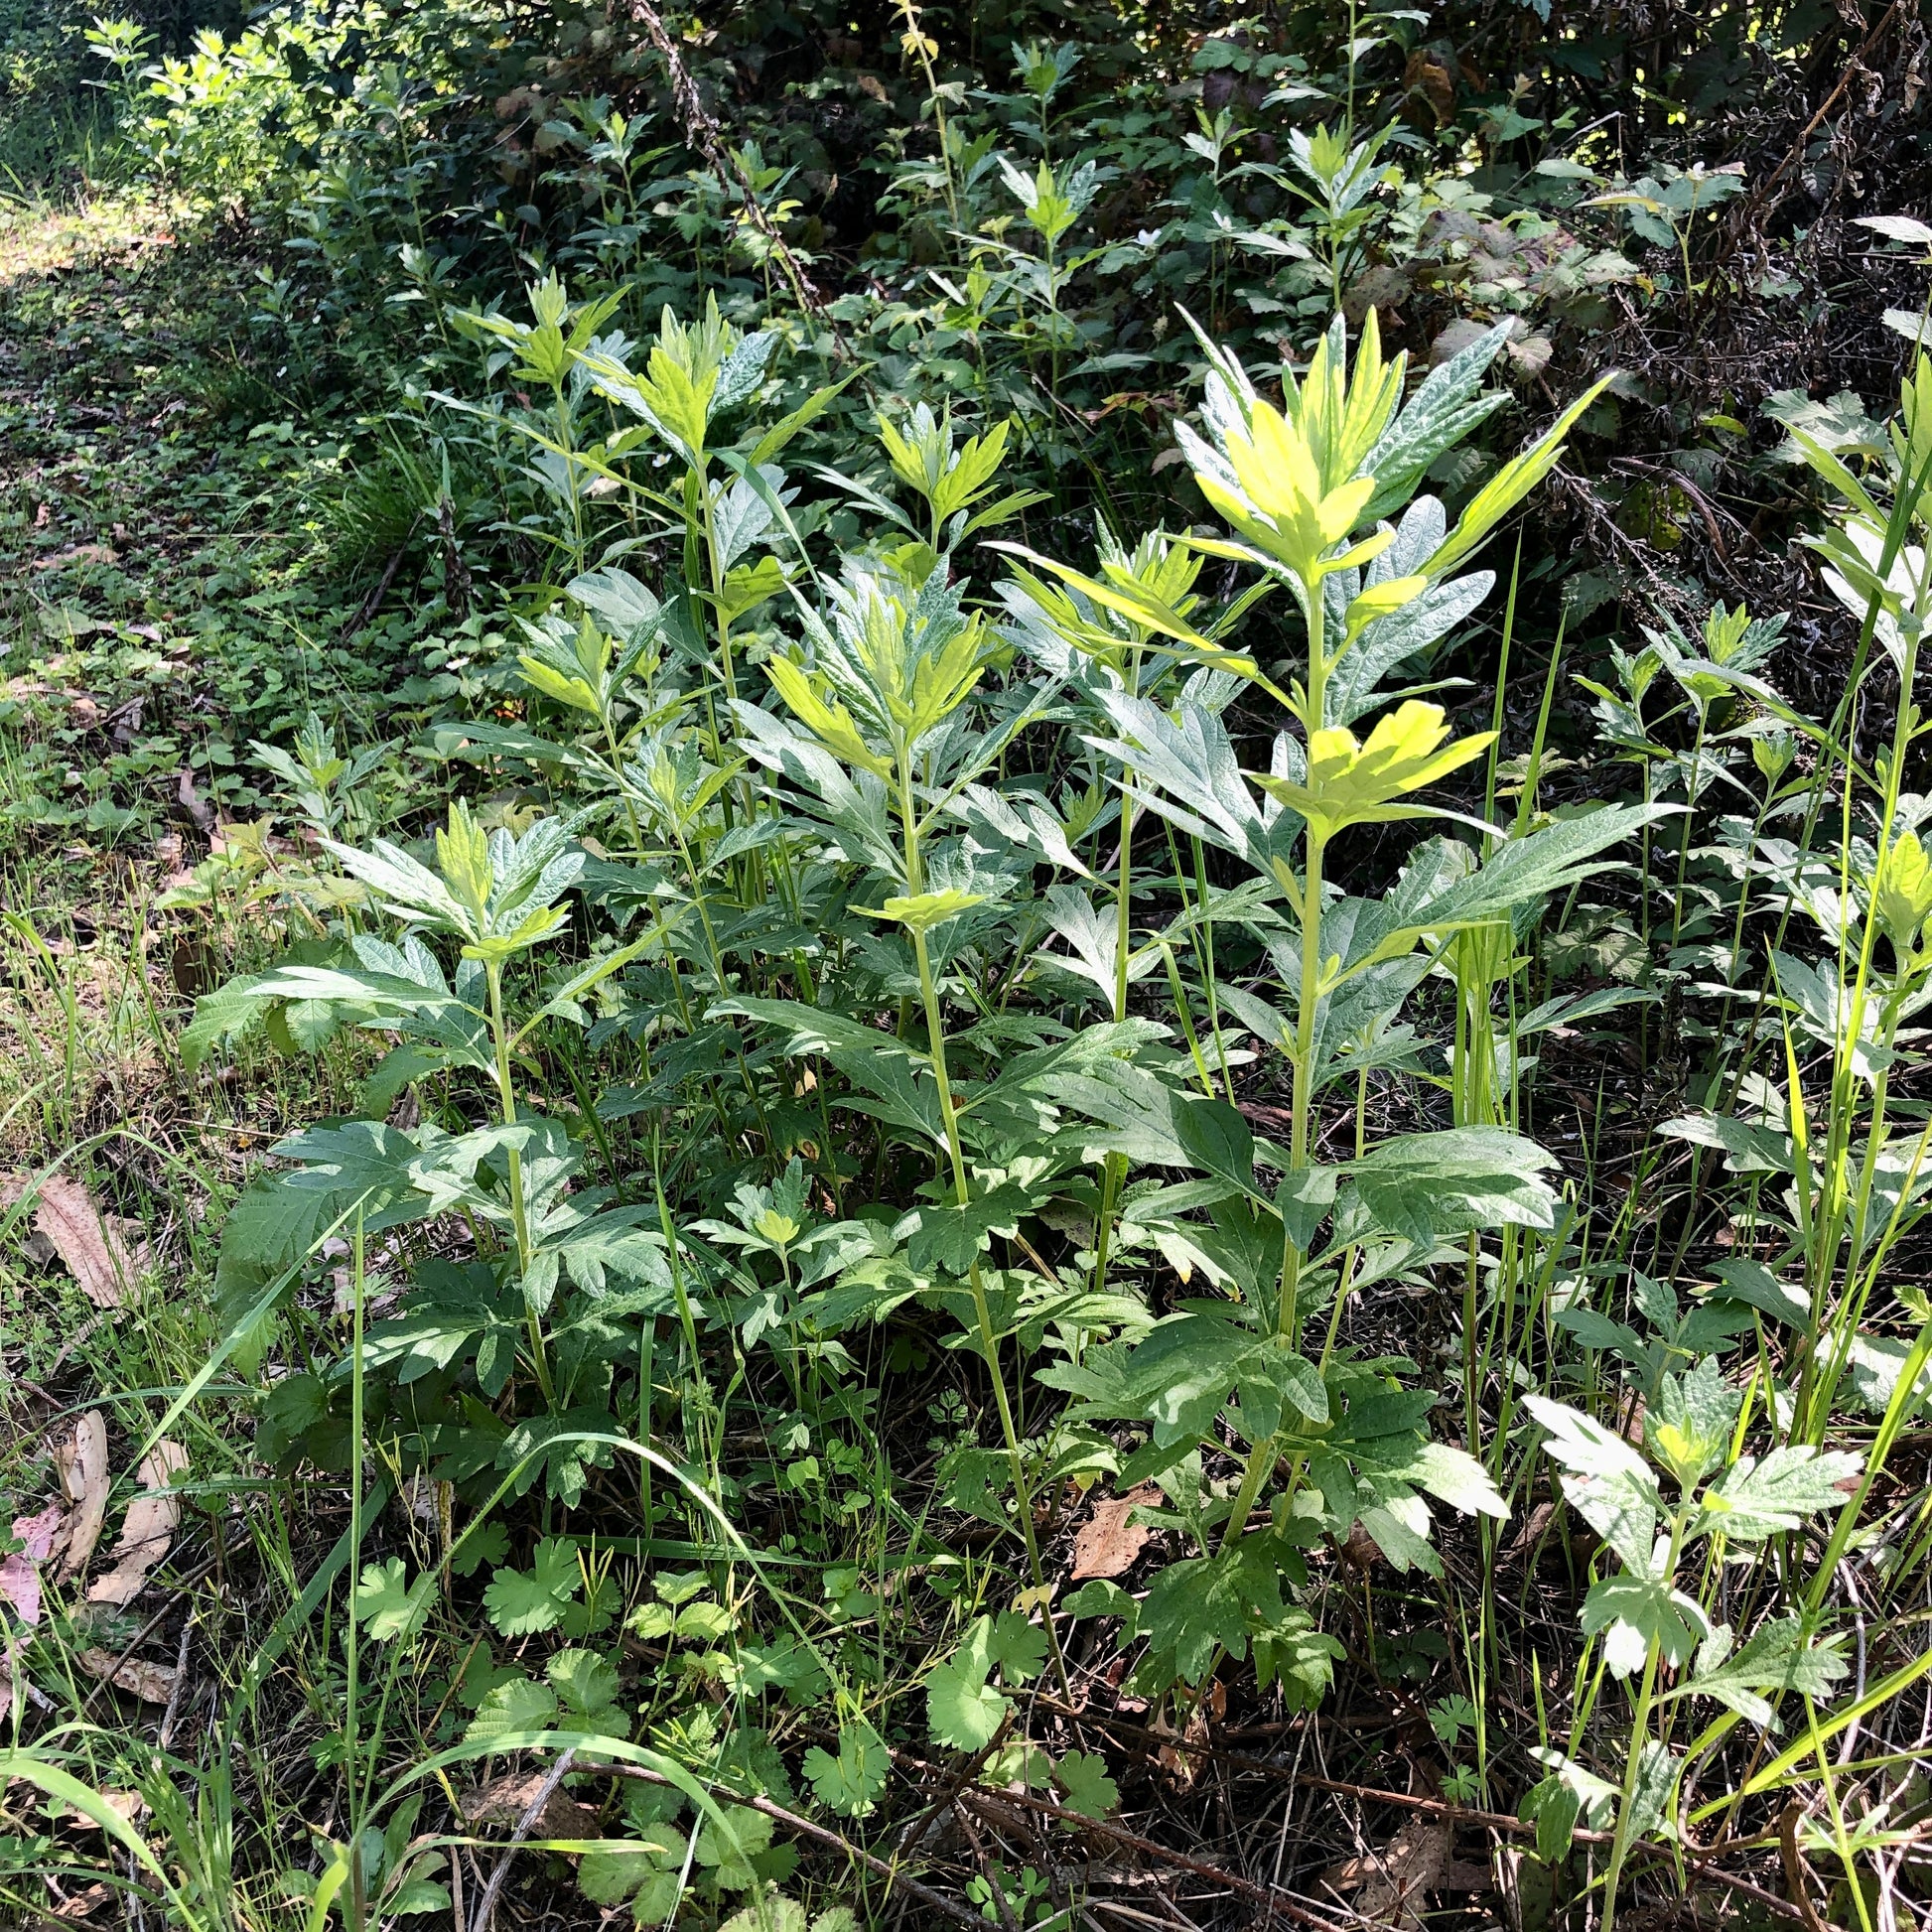 Wild california mugwort (Artemisia douglasiana)